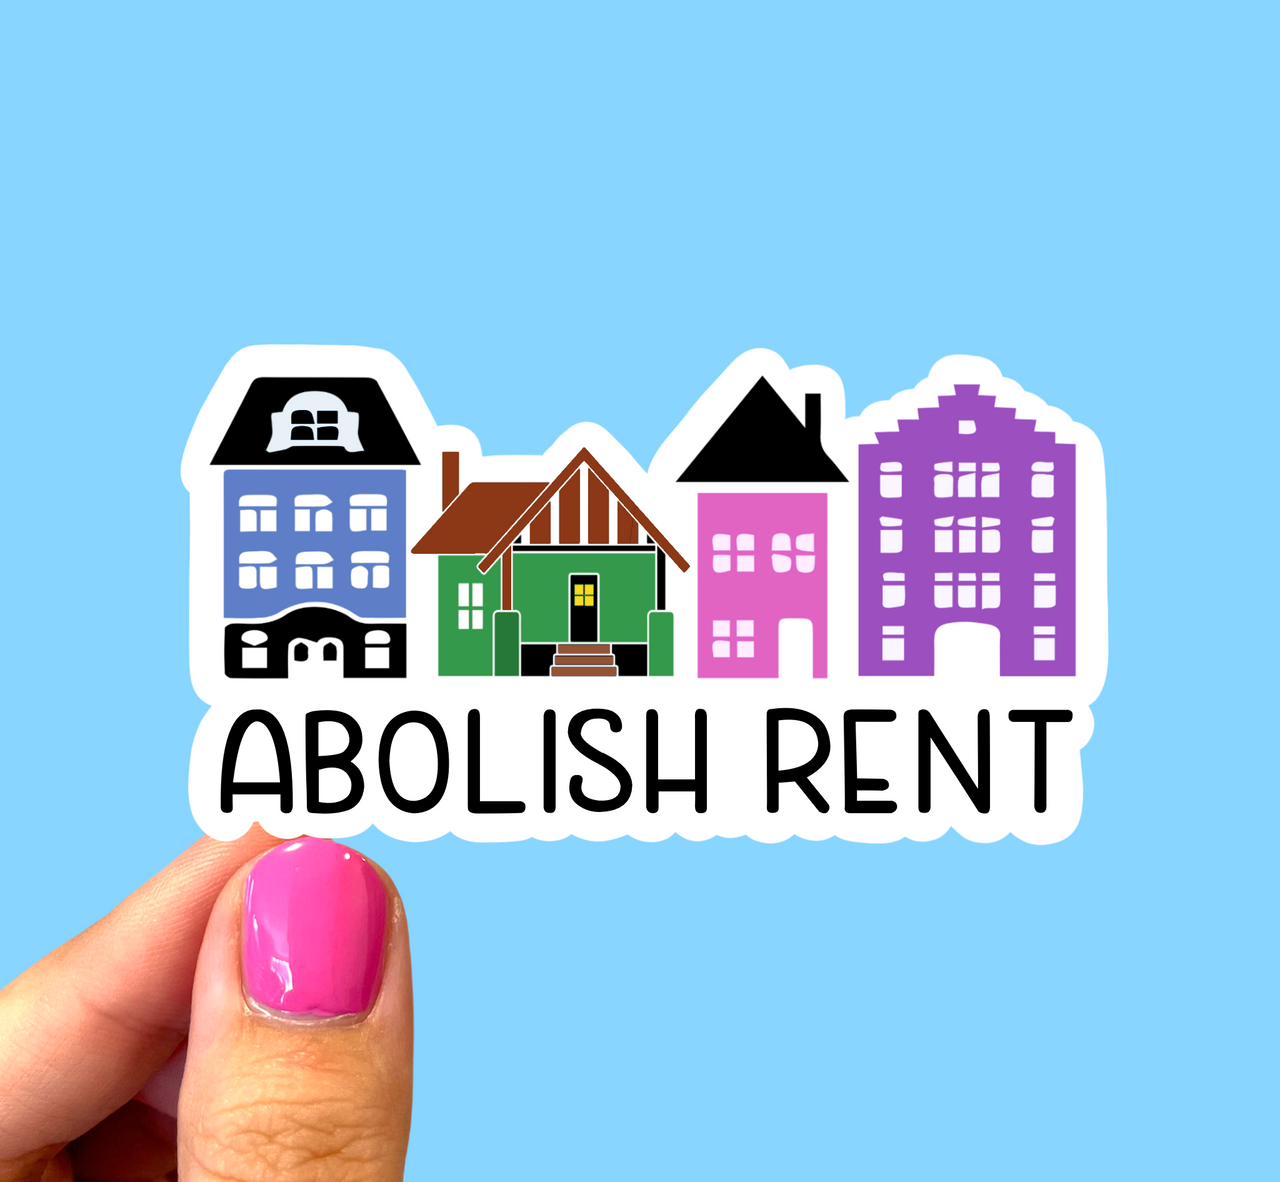 Abolish rent